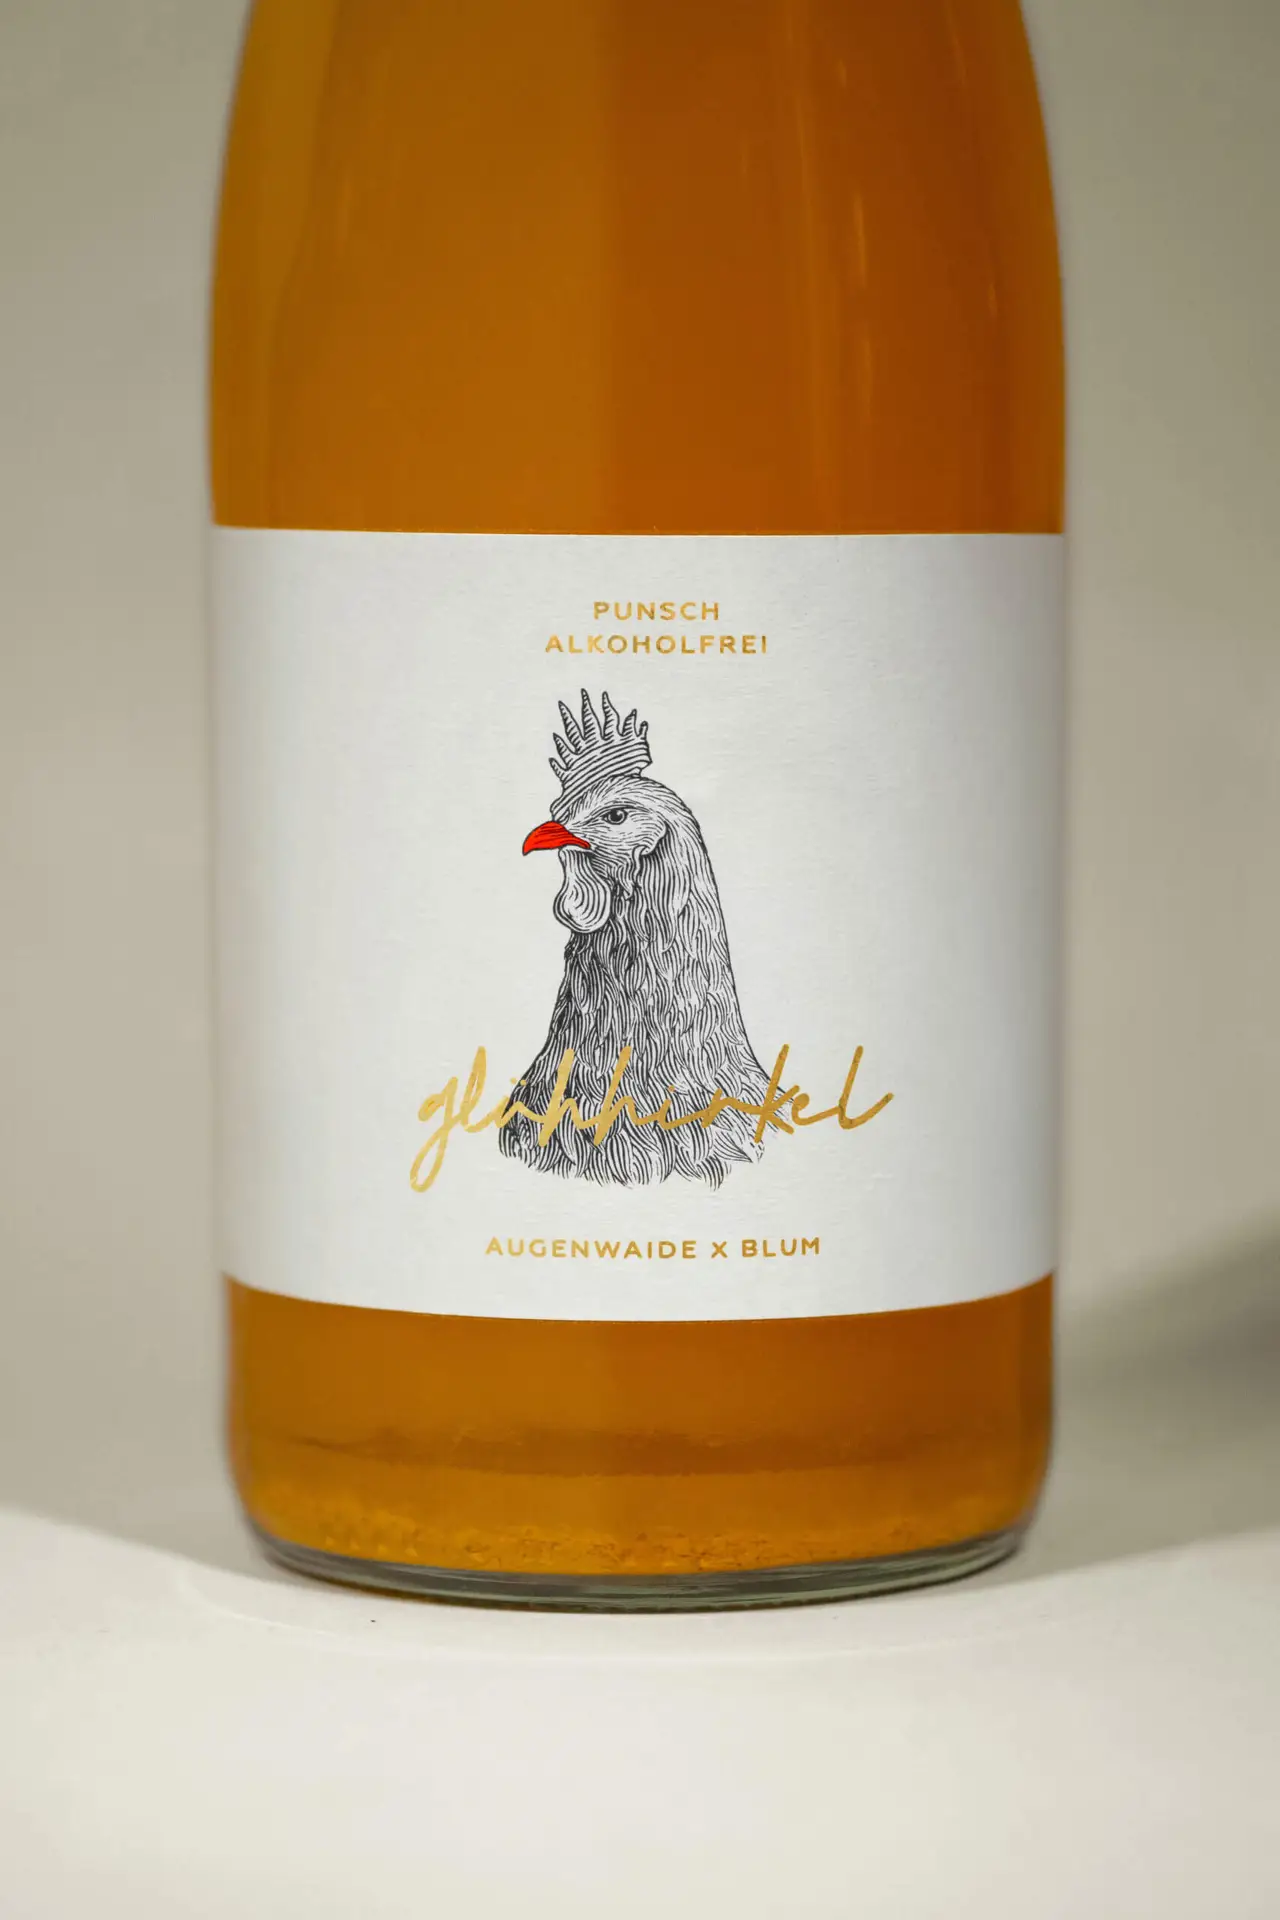 Mona-Wingerter-portfolio-grafiker-grafikdesign-wein-Wine-winebottle-mulledwine-punsch-gluehwein-packaging-label-labeldesign-logo-brand-design-Wachenheim-animal-Augenwaide-Winzerwein-Carla-Blum_5